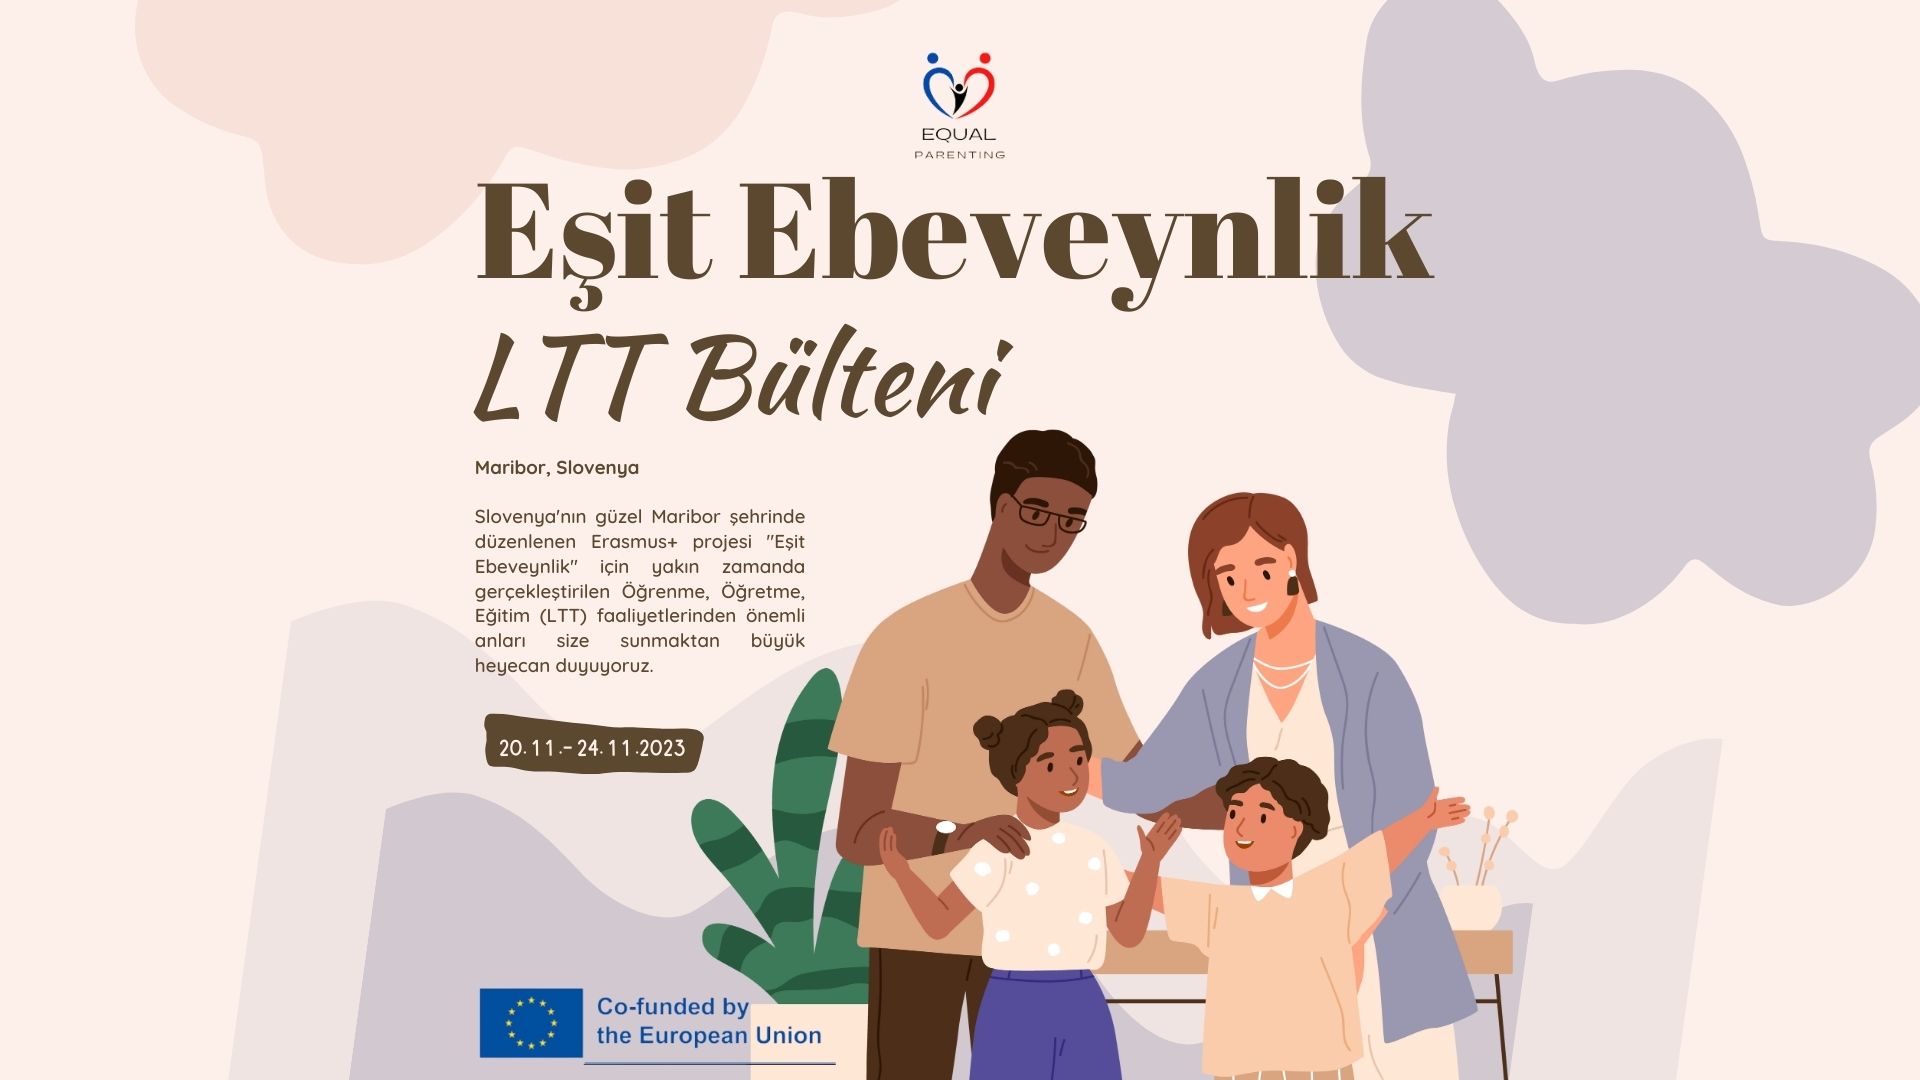 Erasmus+ KA2 Equal Parenting Projemizin 5. Haber Bülteni Yayınlandı